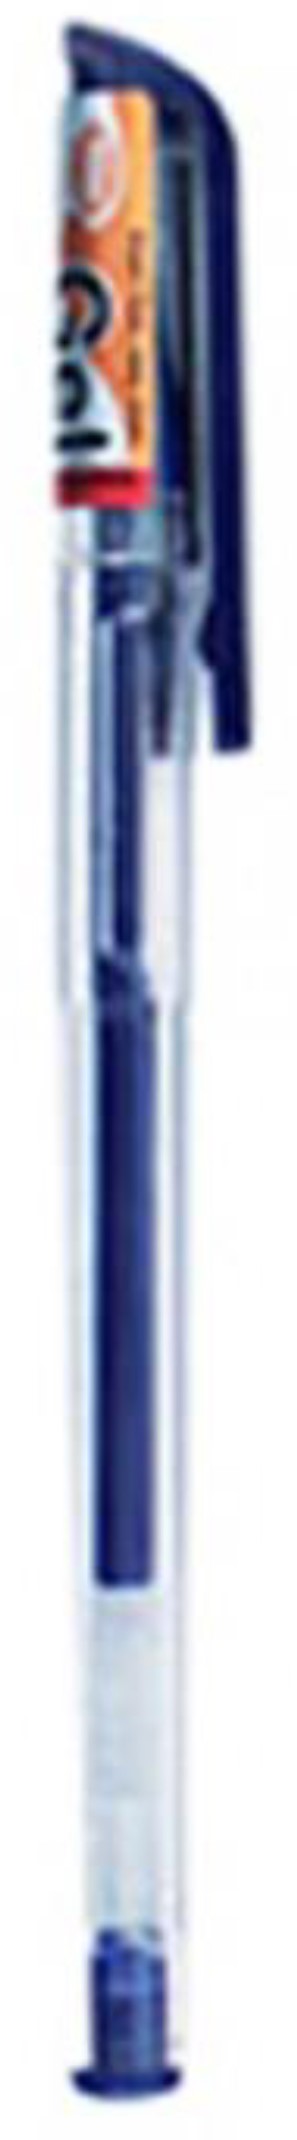 Atlas Chooty Gel Pen Blue